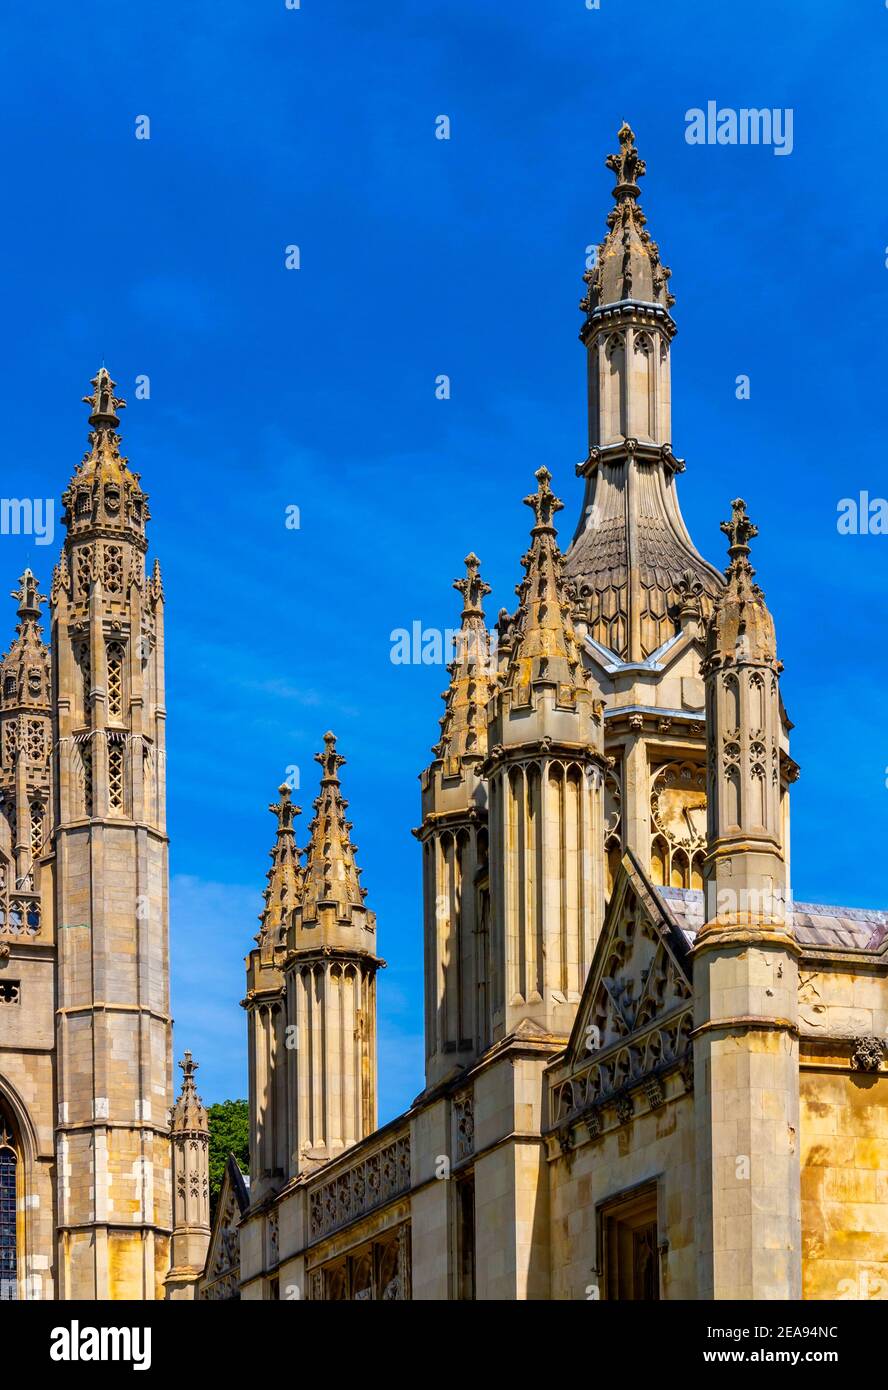 Détail des bâtiments du King's College de l'Université de Cambridge à Cambridgeshire Angleterre Royaume-Uni qui a été fondée par le roi Henry VI en 1441. Banque D'Images